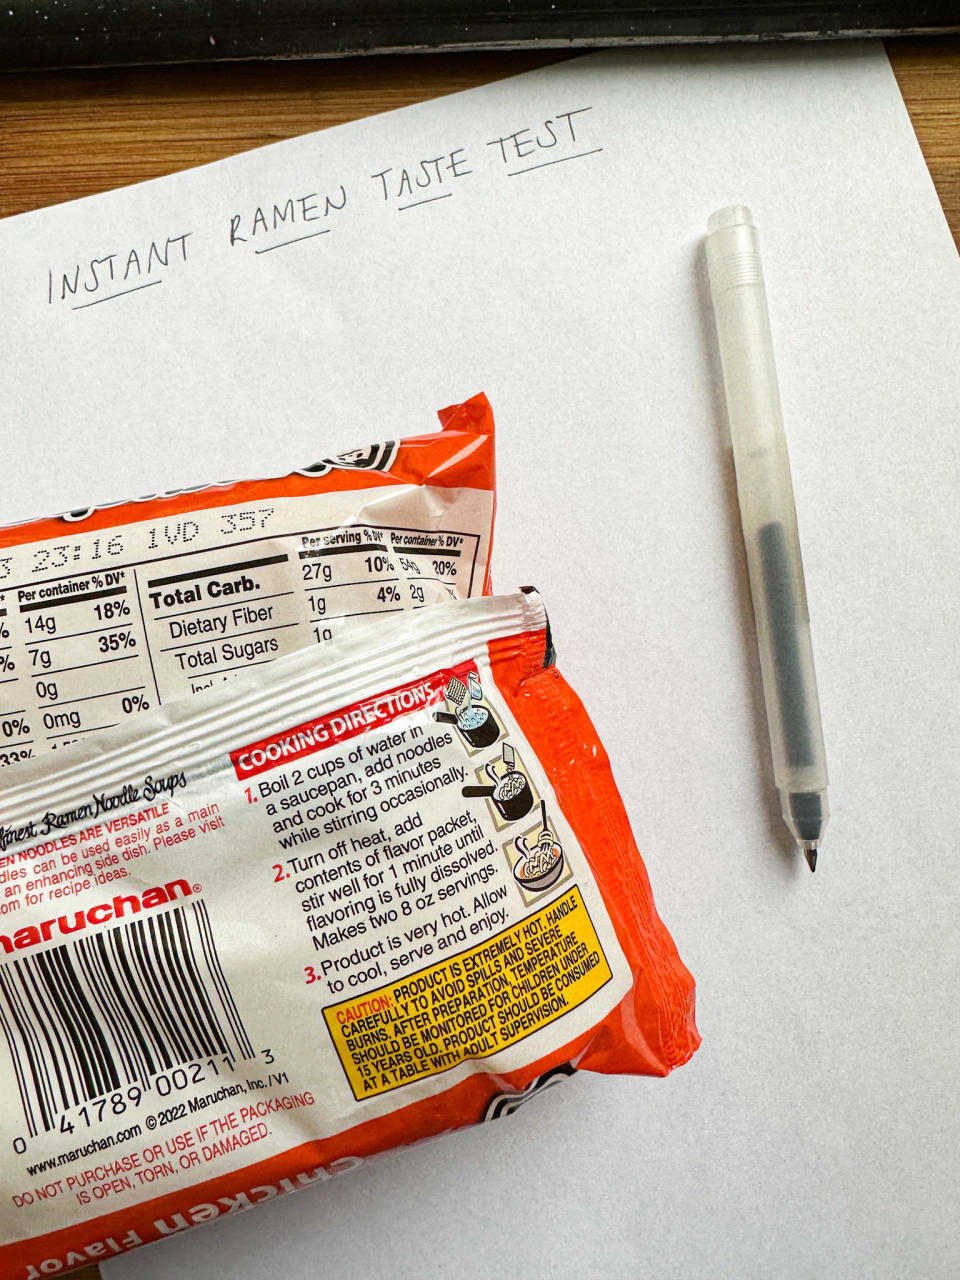 packet of ramen, instant ramen taste test written on paper, with pen on top